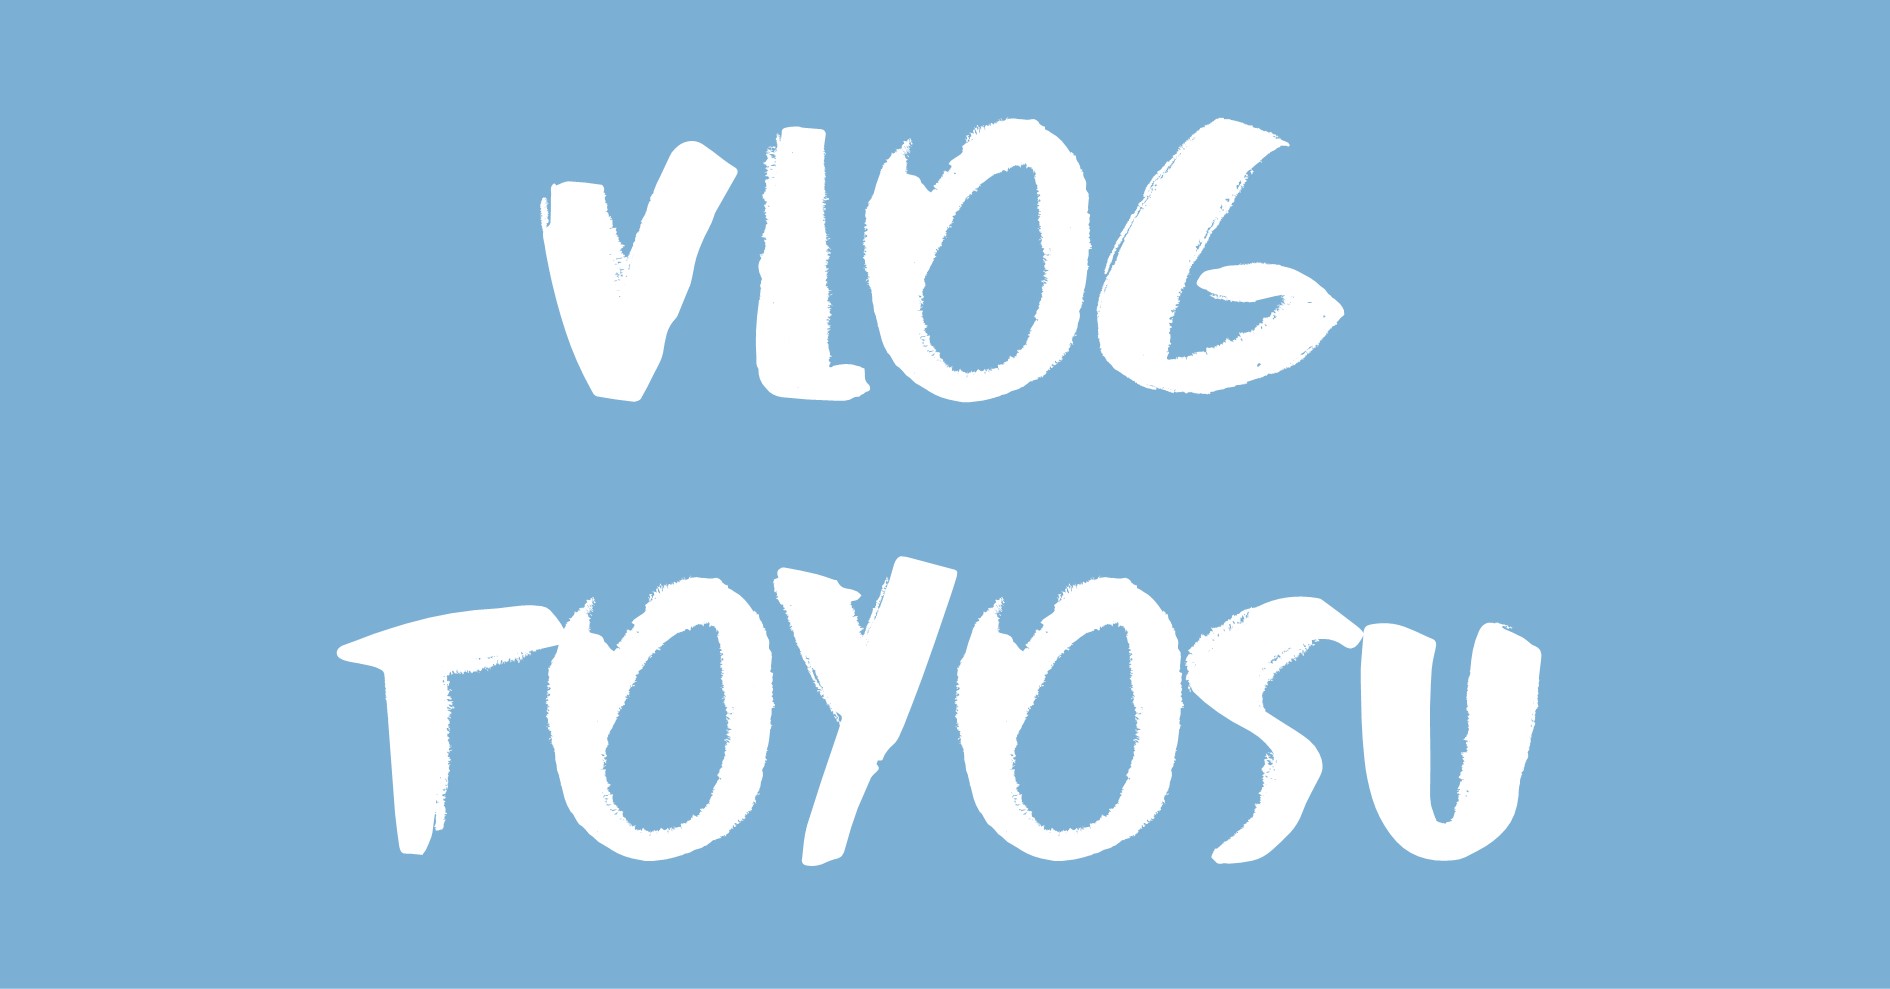 Vlog Toyosu